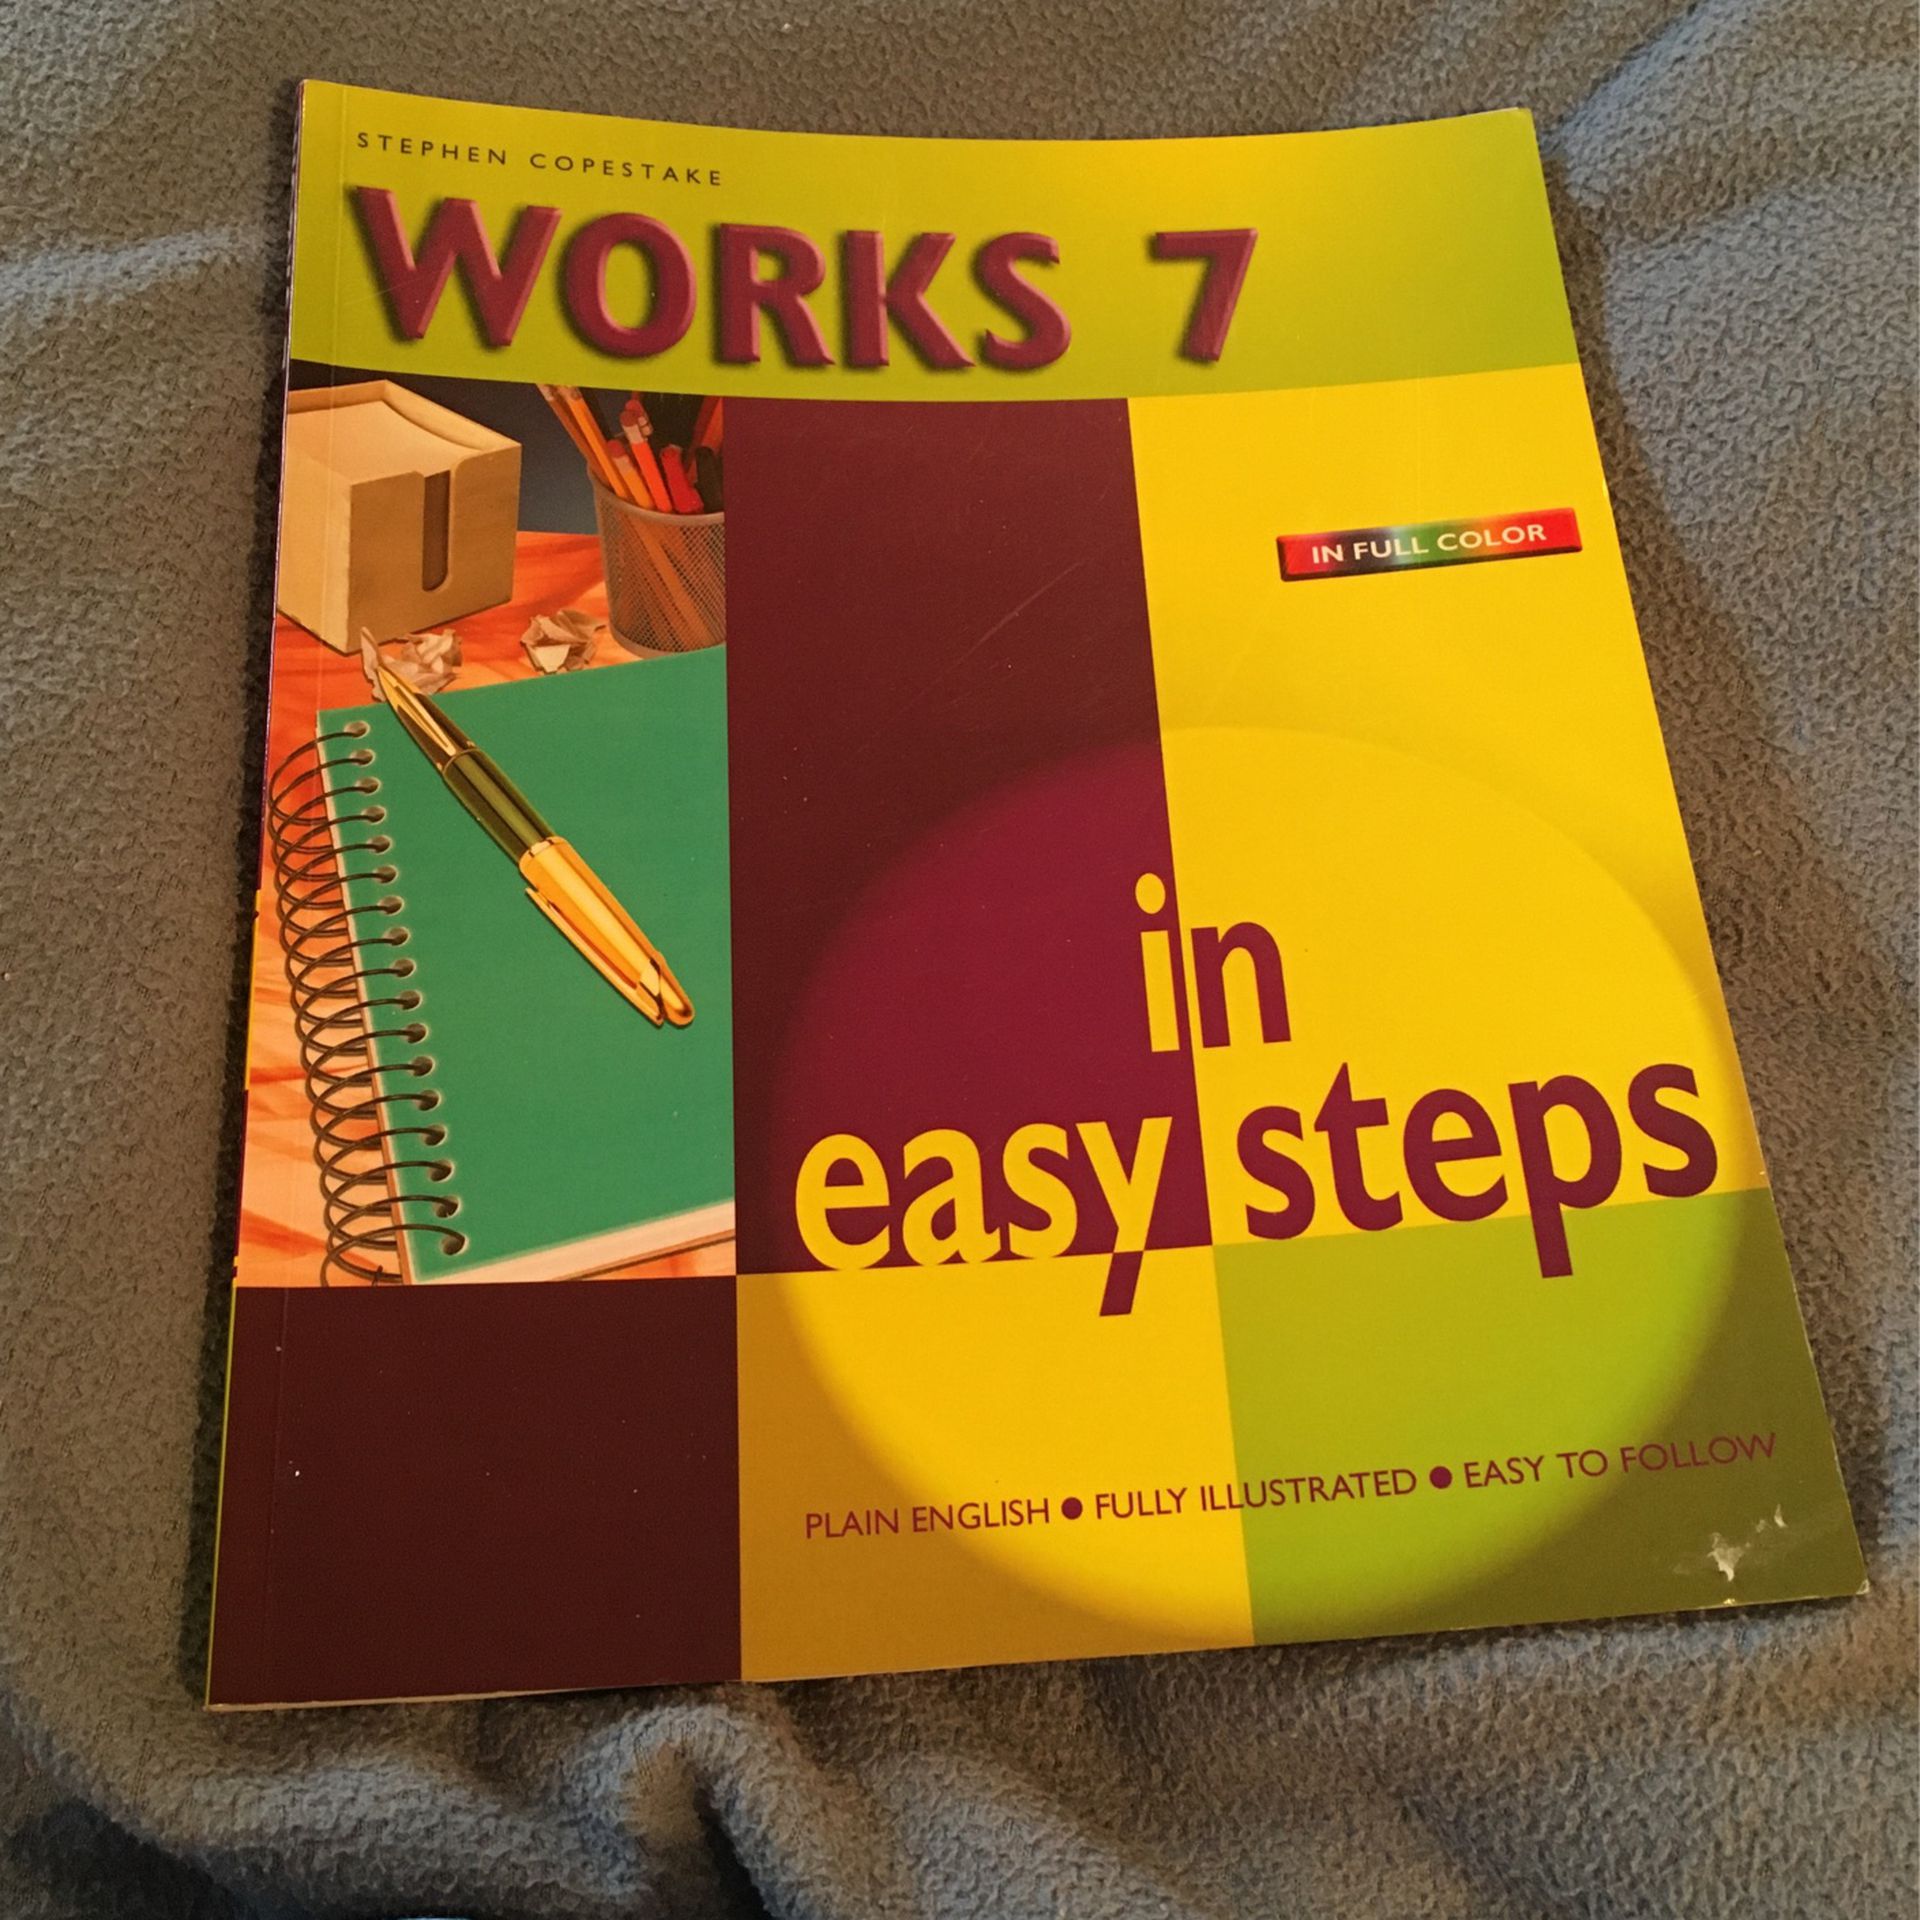 WORK 7 IN EASY STEPS